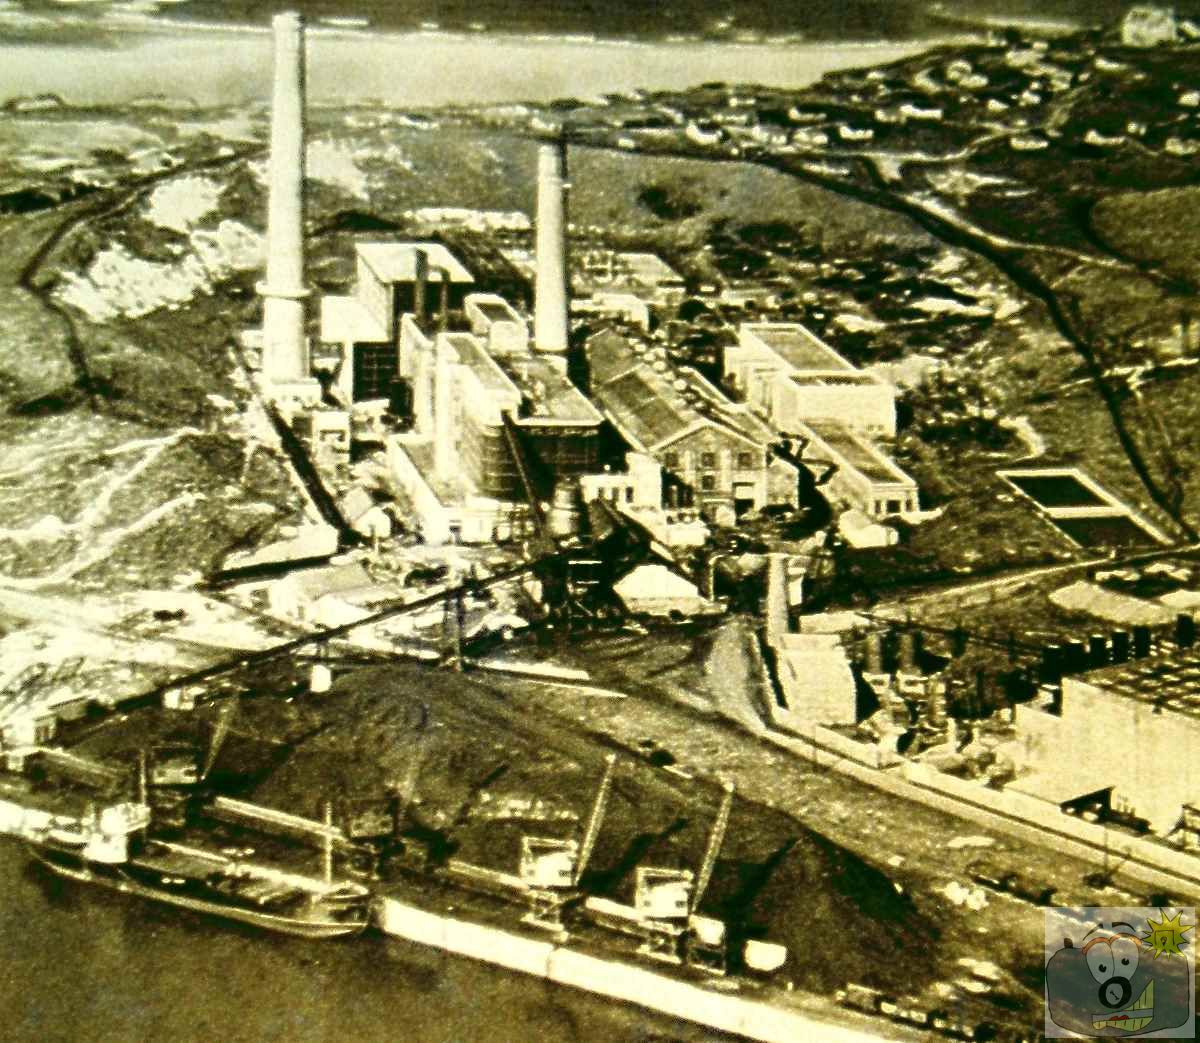 Hayle power plant